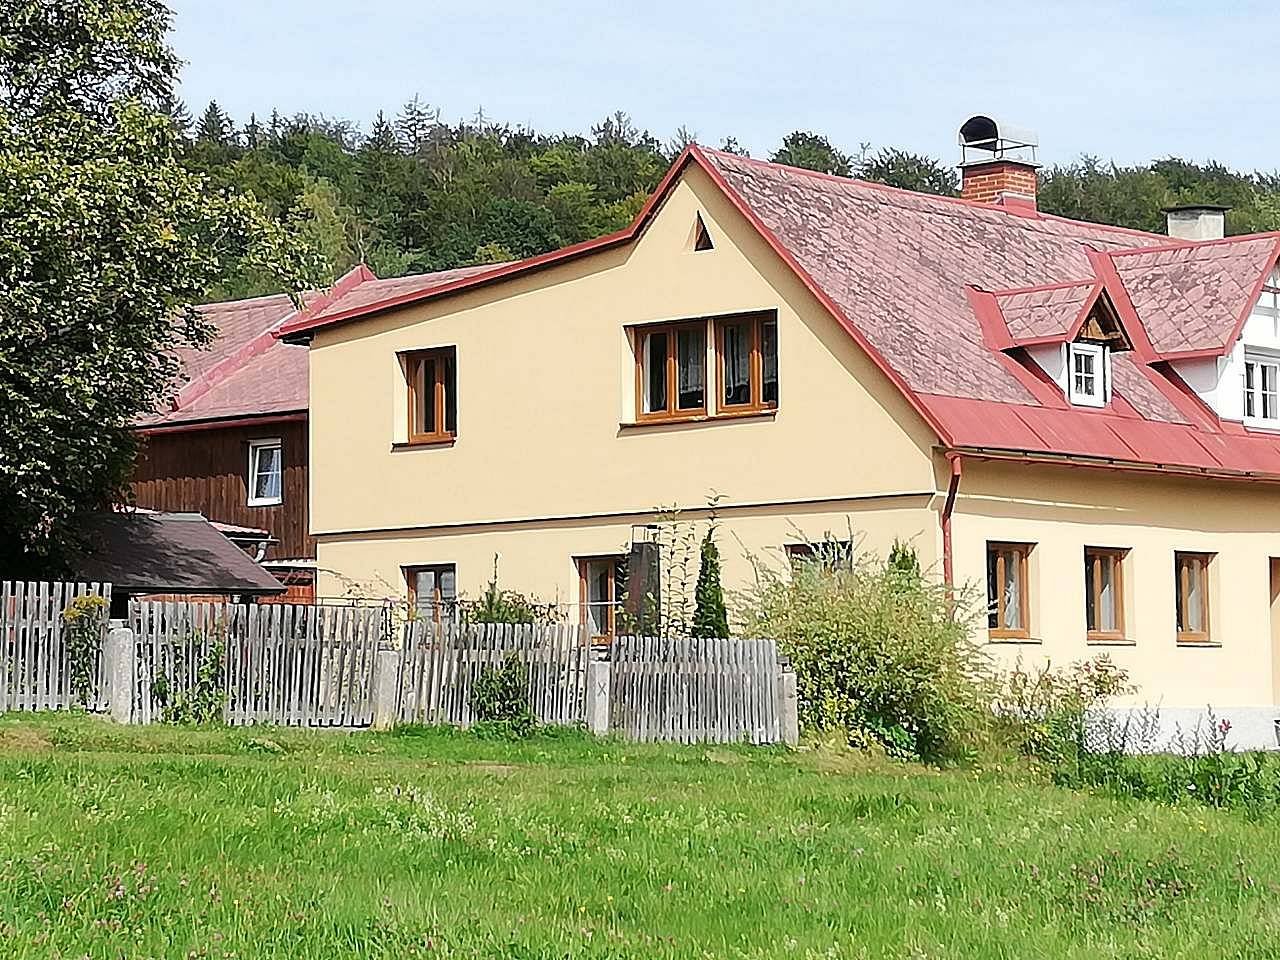 Ubytování a hospůdka U Františka - Liberecko, Jizerské hory